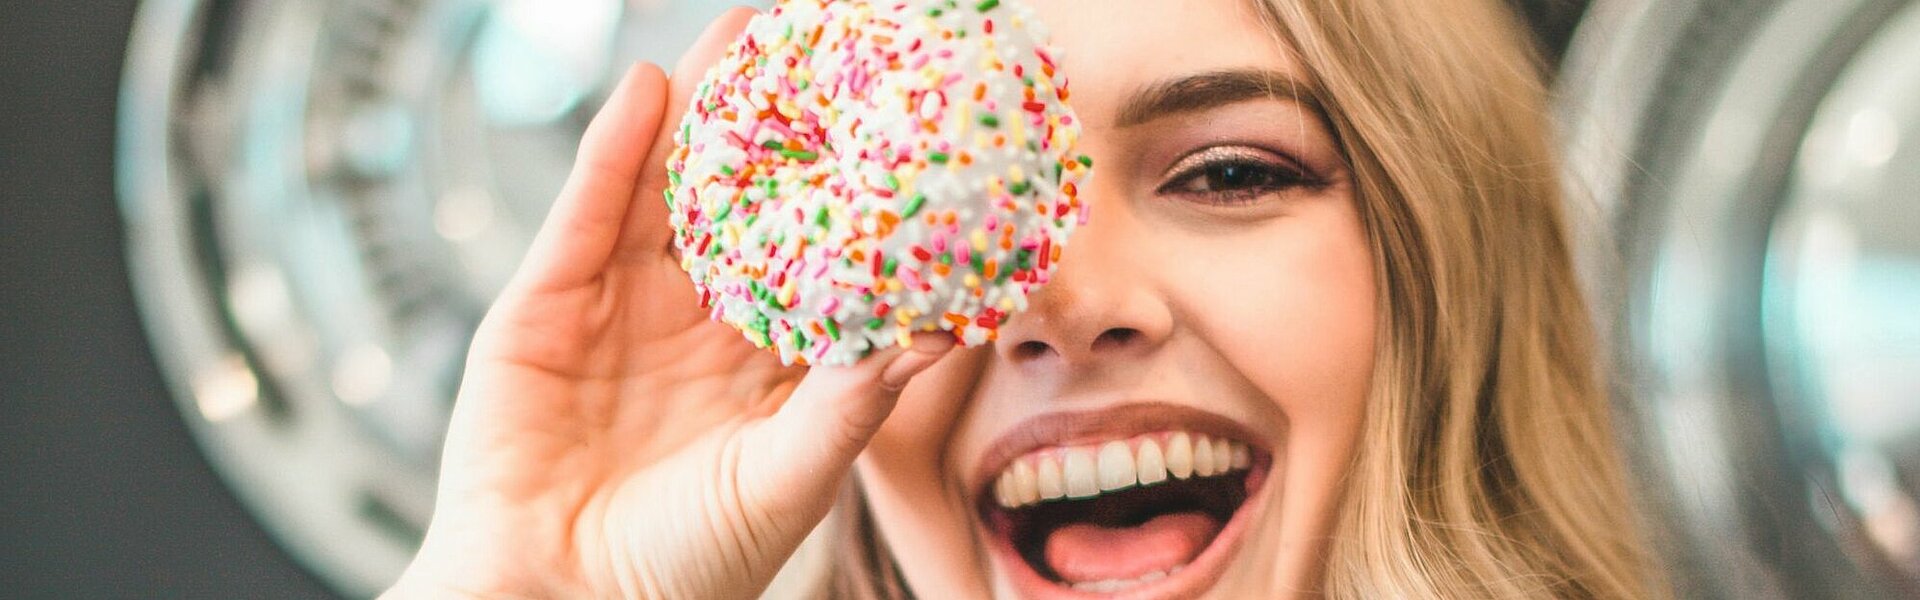 Lachende junge Frau, die sich einen Donut vors Auge hält || Foto von Court Prather auf unsplash.com